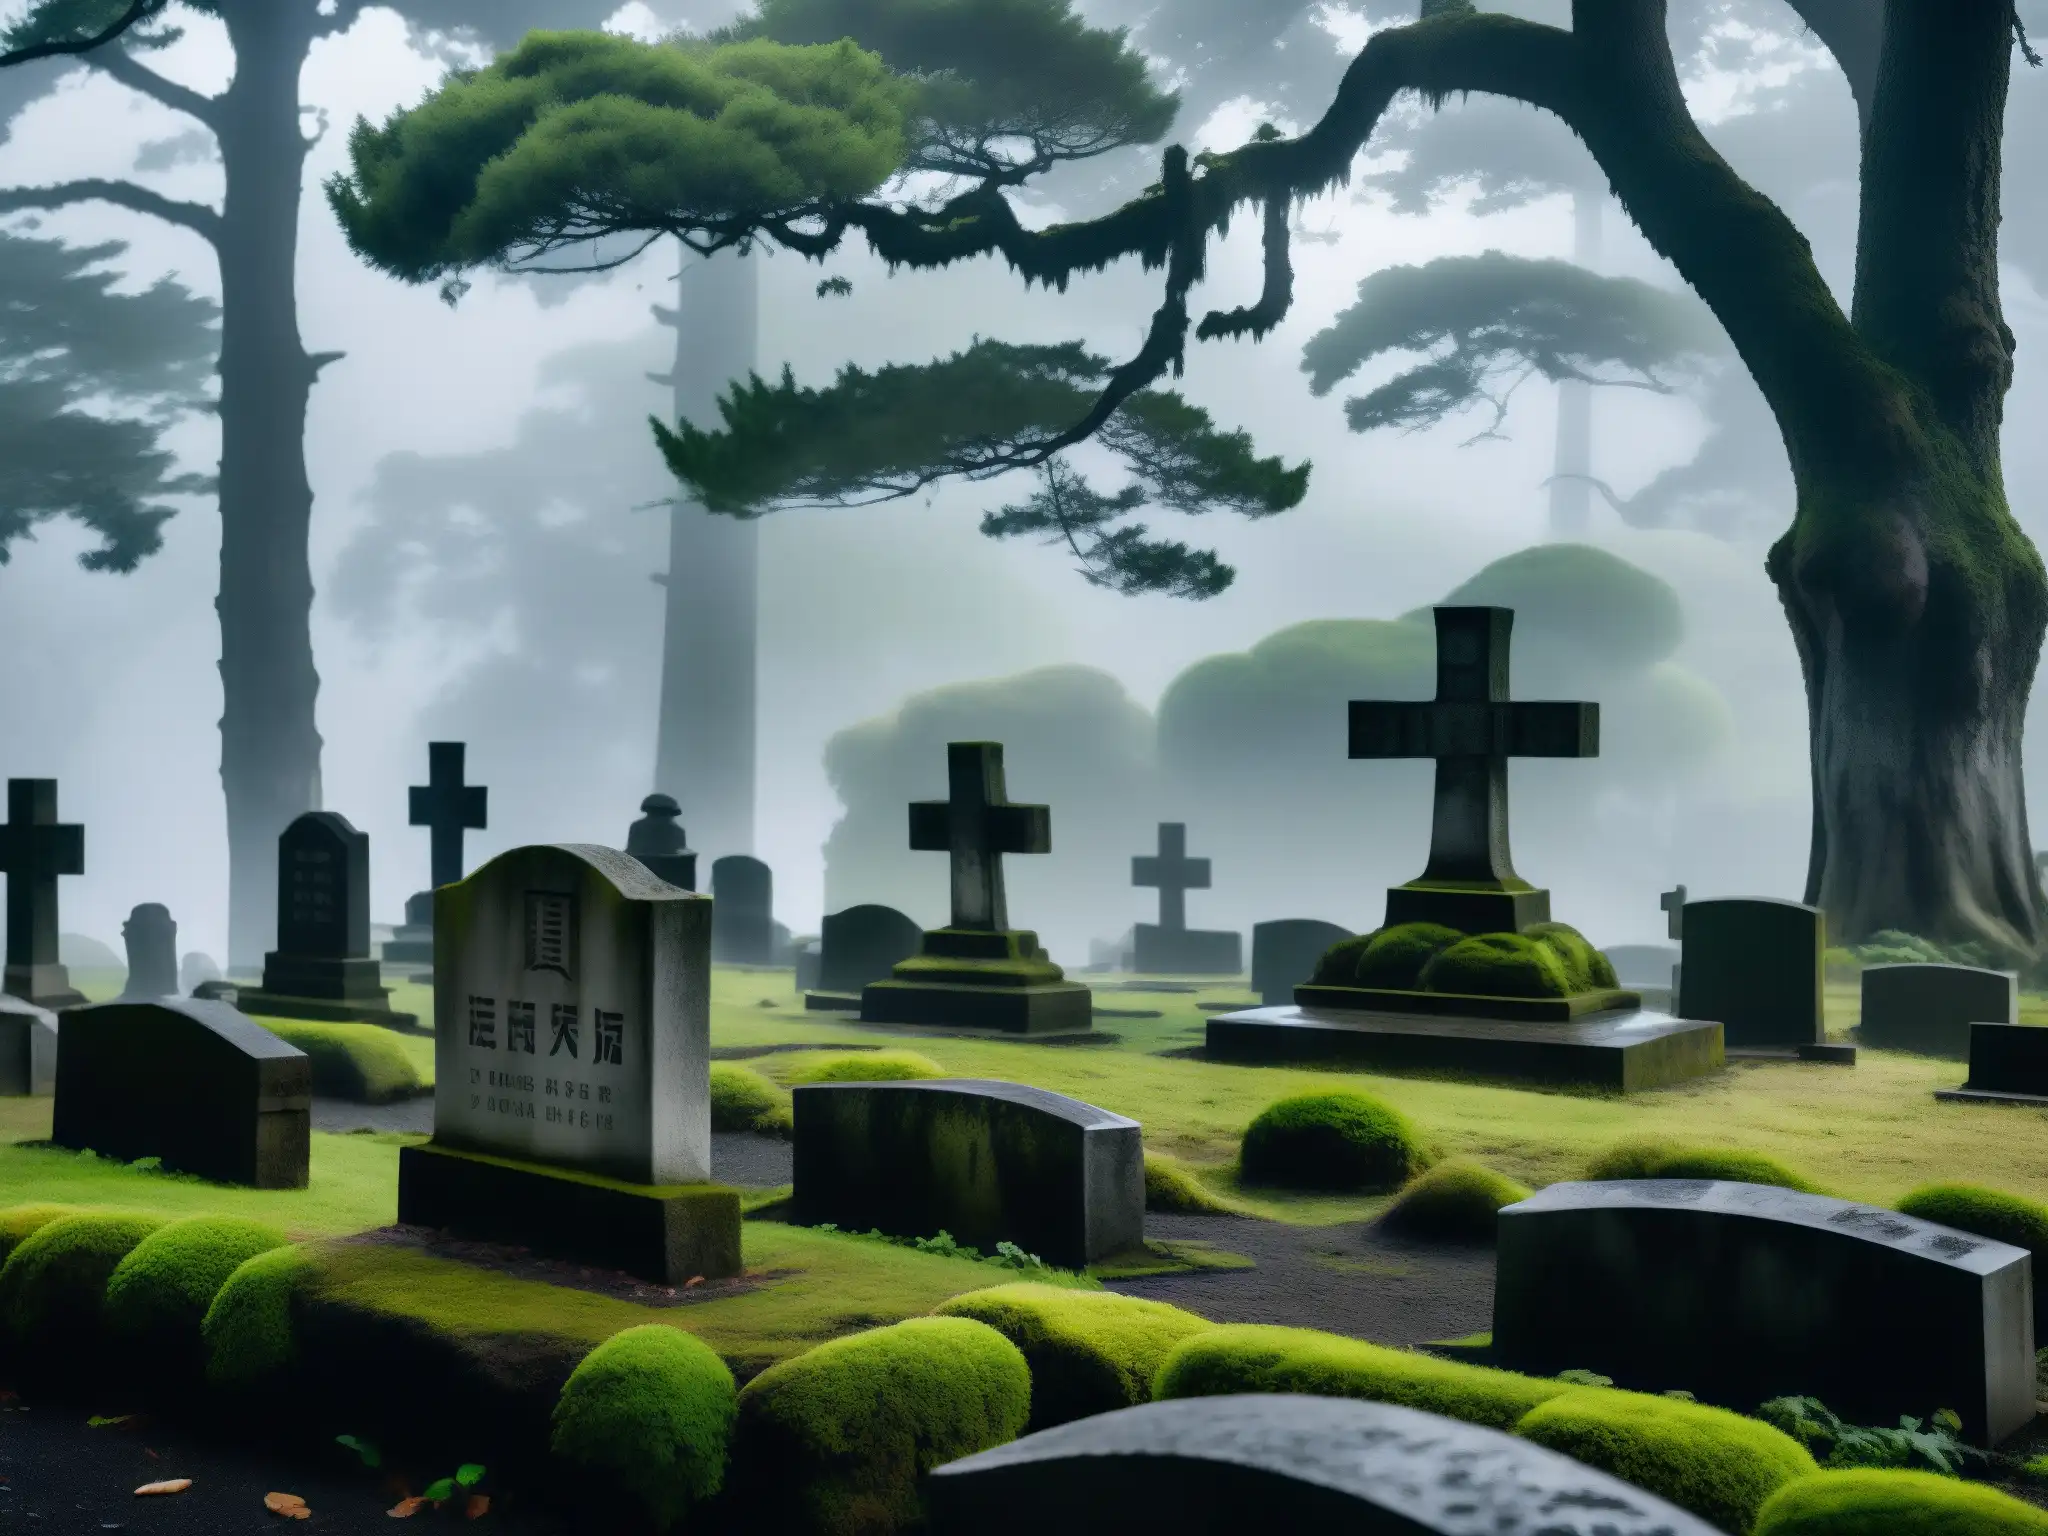 Imagen impactante de un cementerio japonés en la oscuridad, con tumbas cubiertas de musgo y árboles antiguos